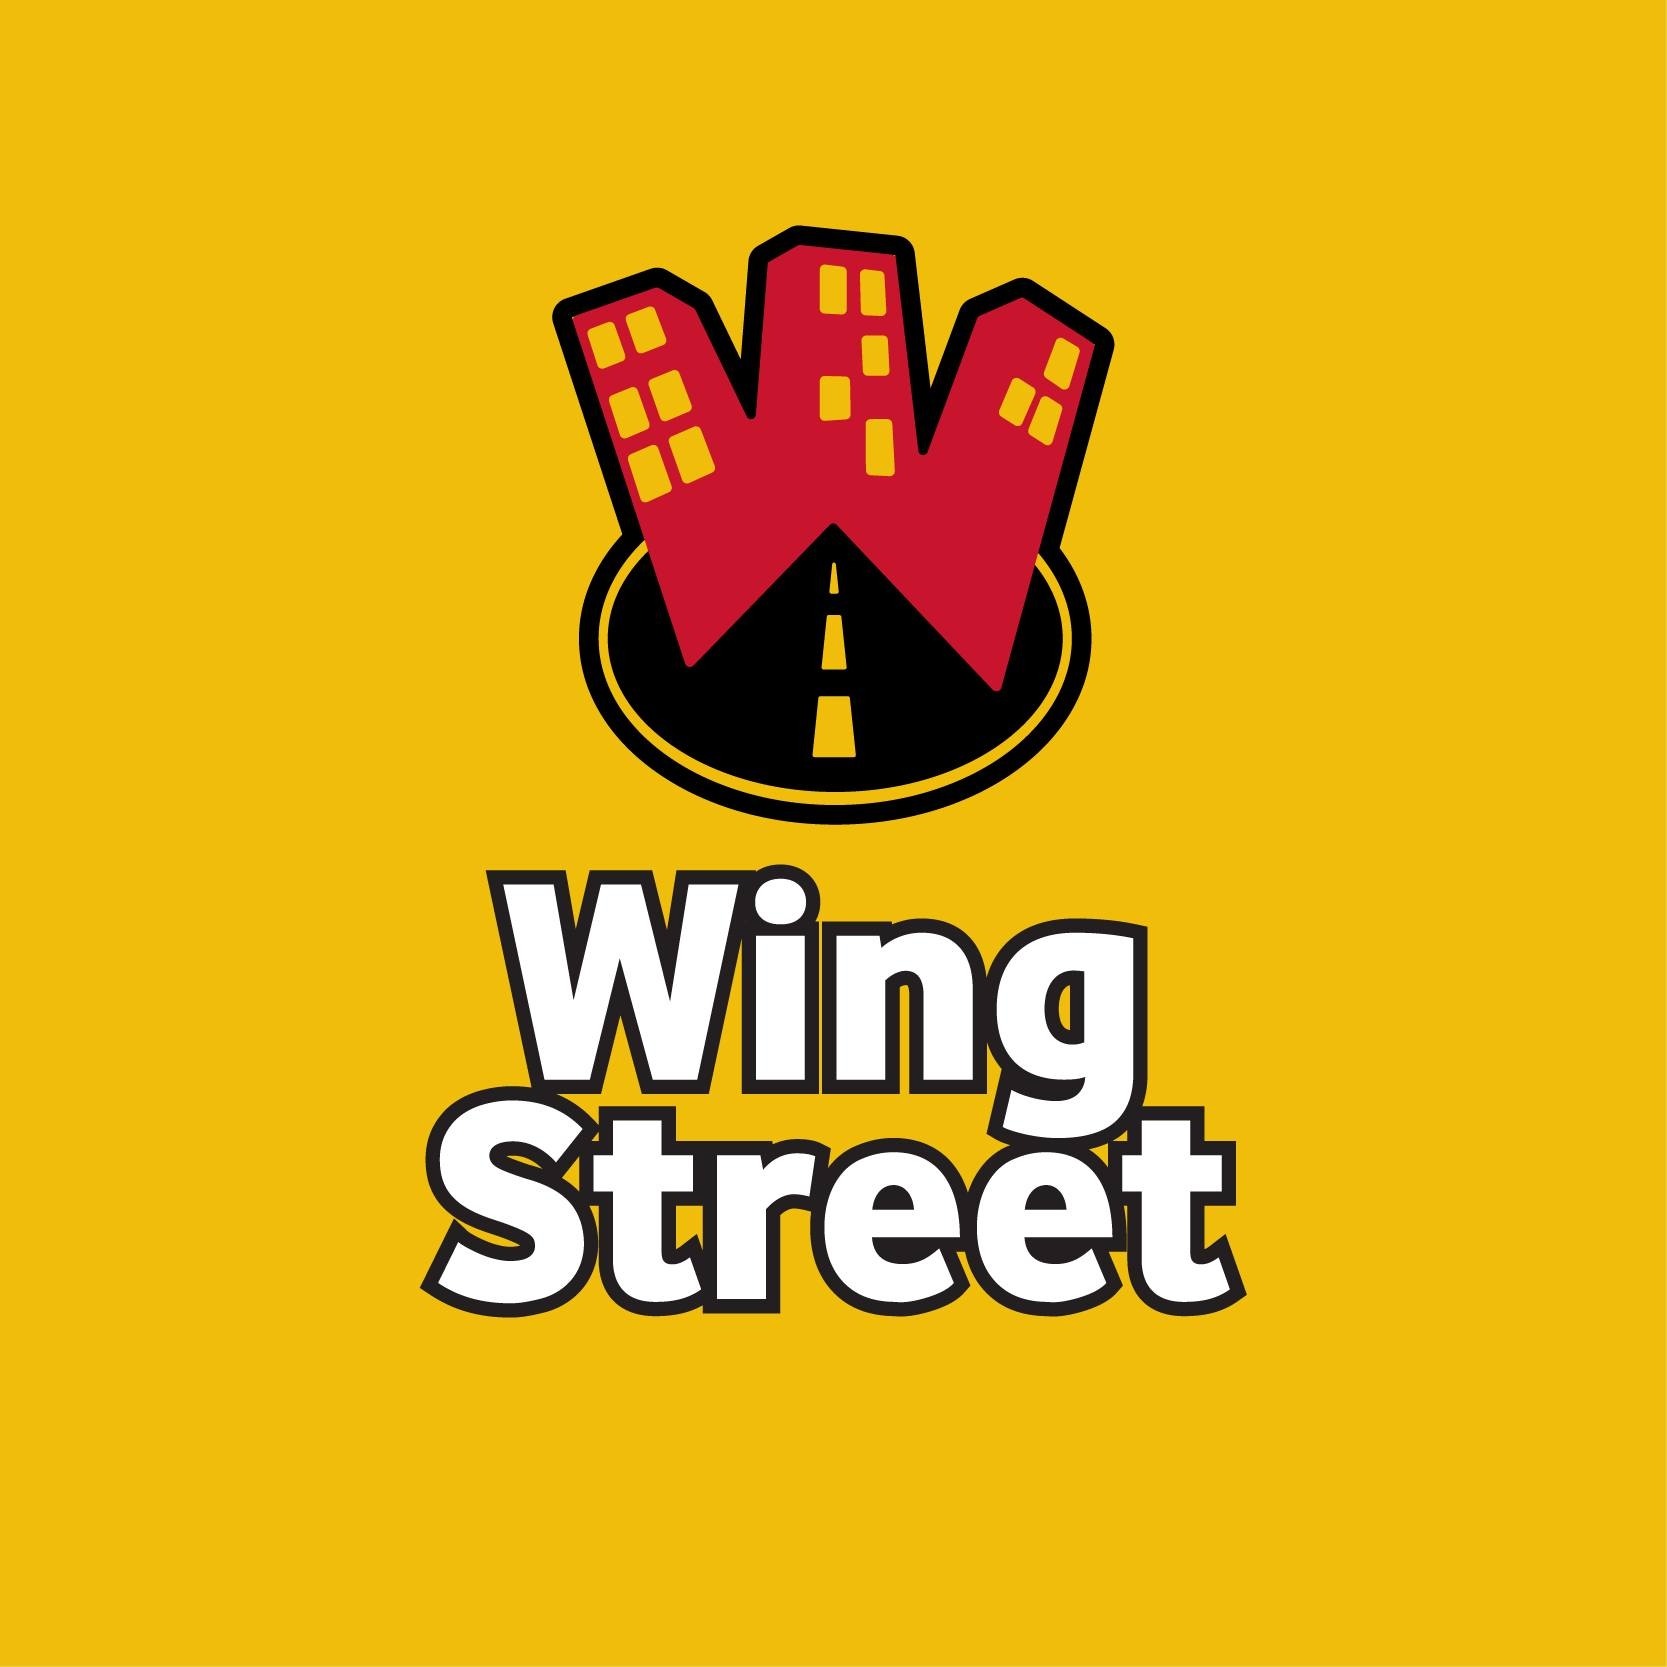 وينجز ستريت Wings Street